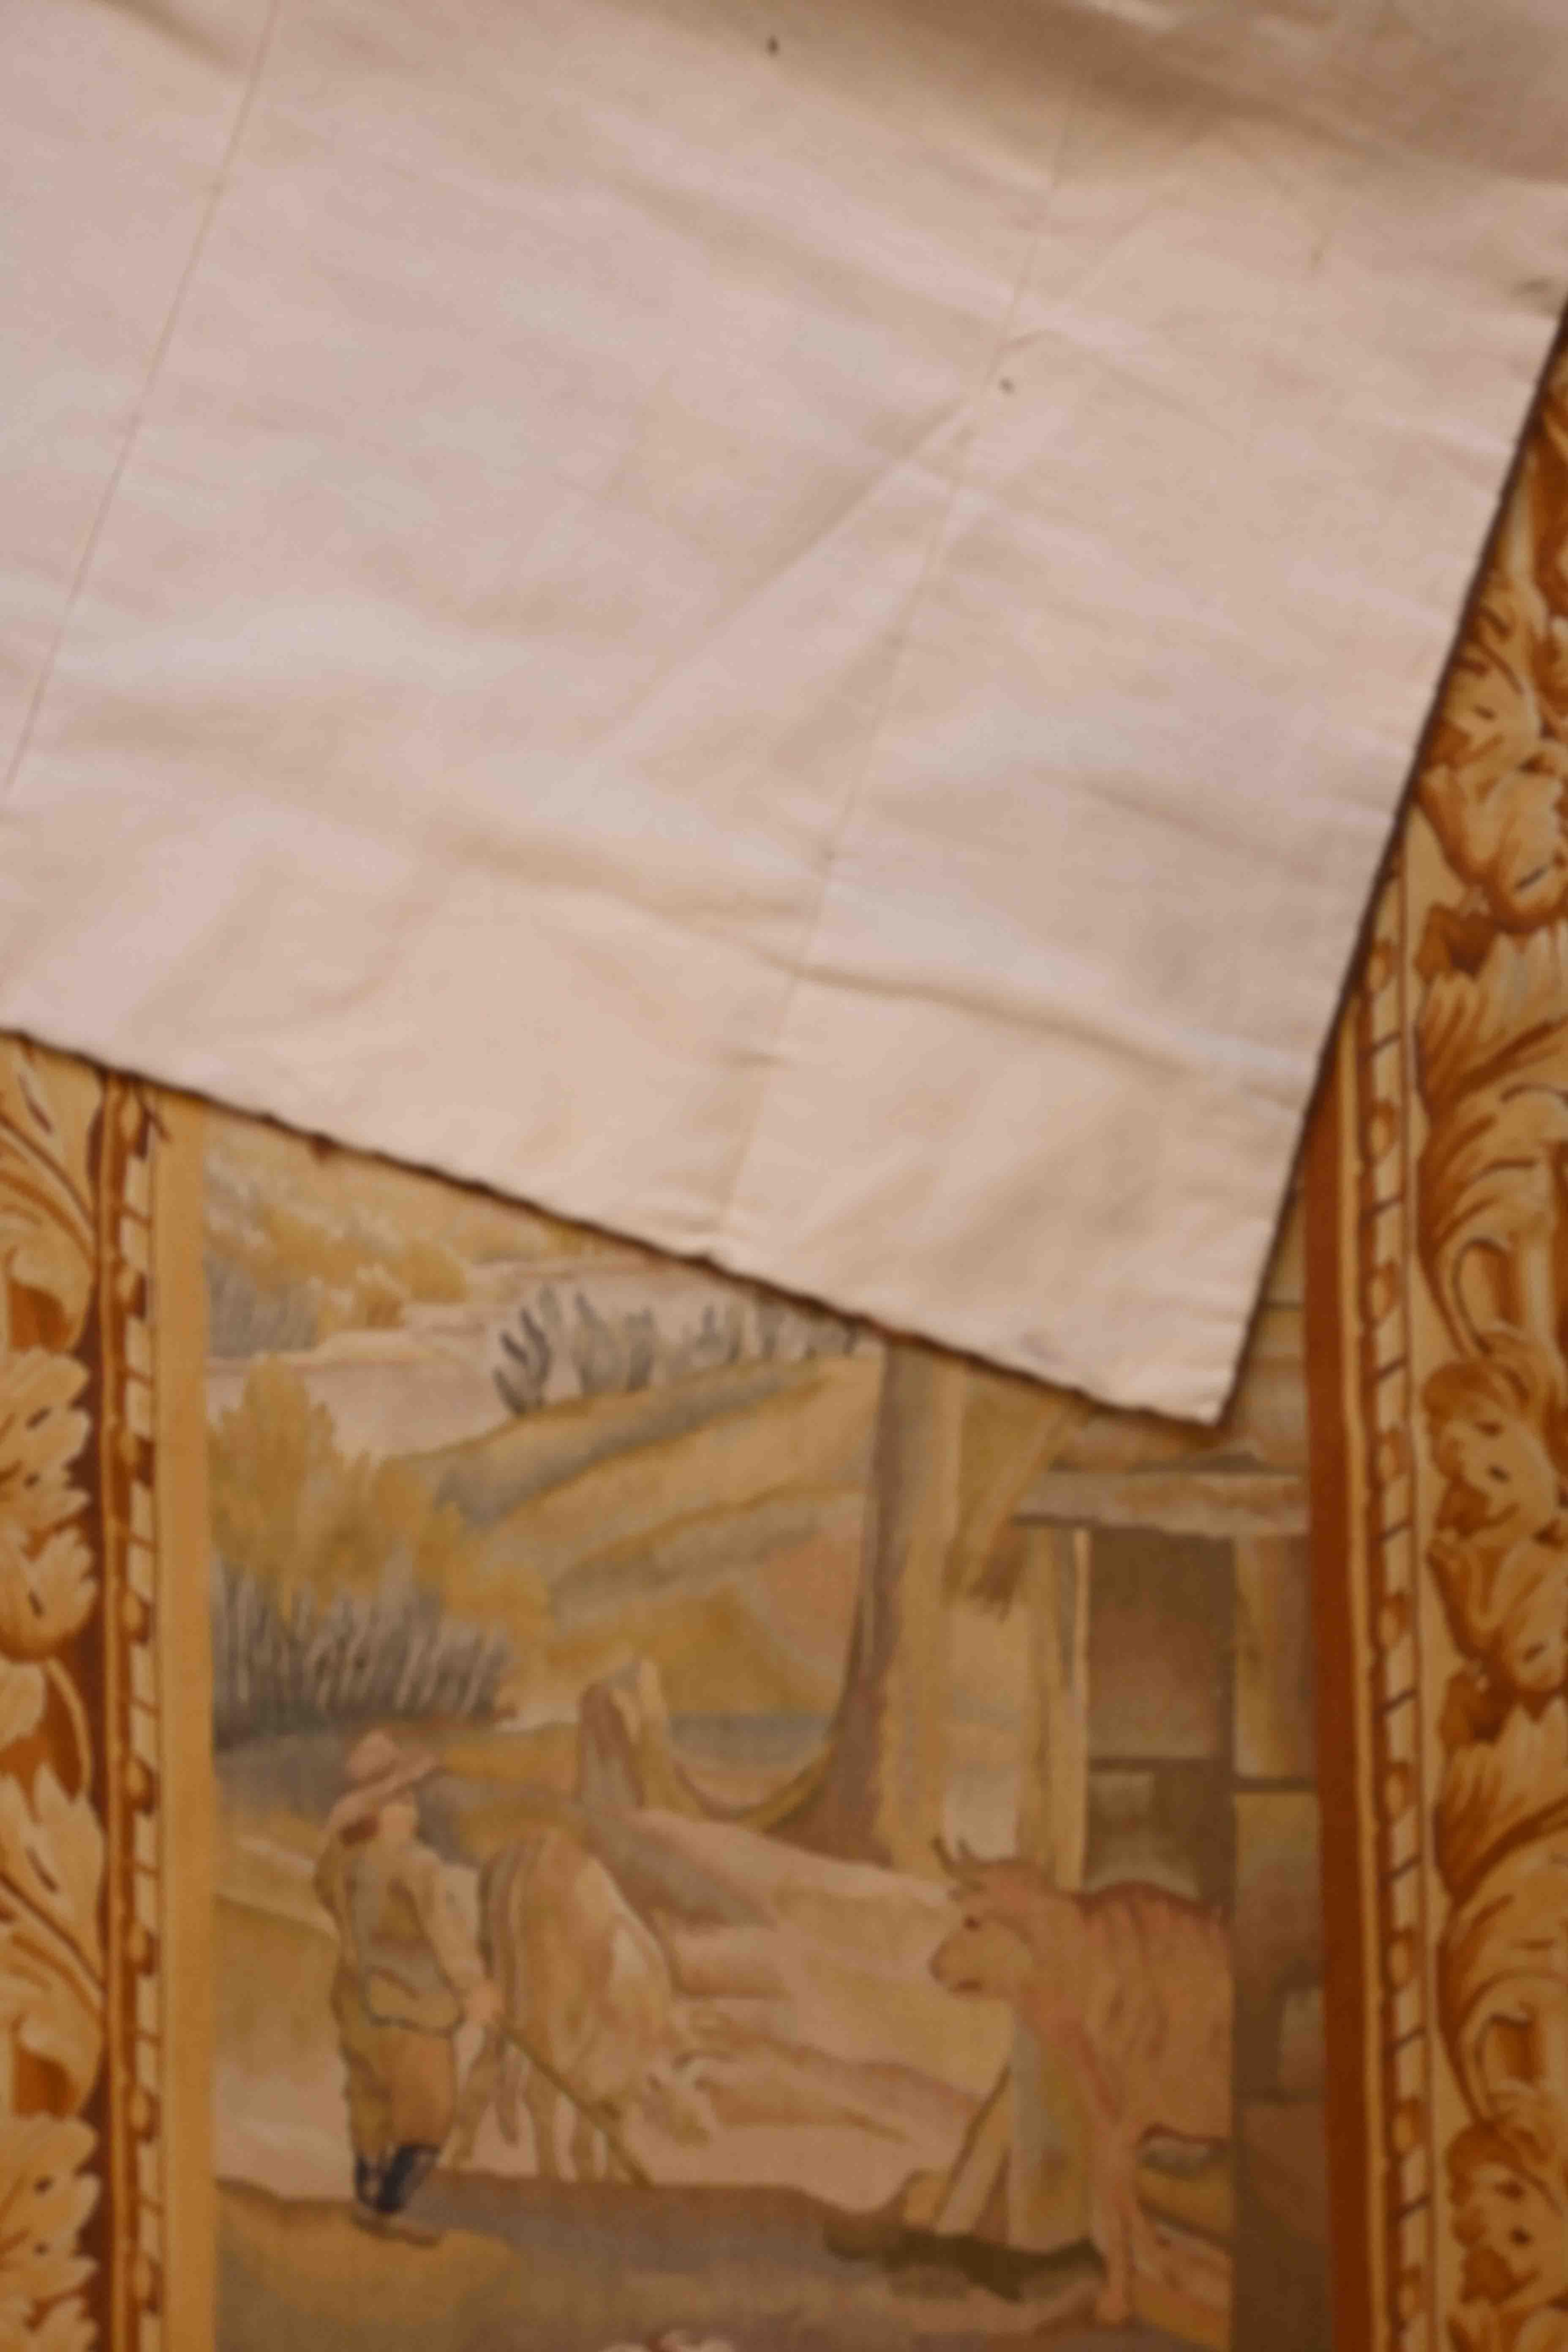 Une très jolie tapisserie aux couleurs fraîches et en très bon état du 19ème siècle - N ° 1244

Grâce à notre atelier de restauration-conservation et aussi à notre savoir-faire, 
nous avons le plaisir de vous présenter des œuvres d'art en tissu